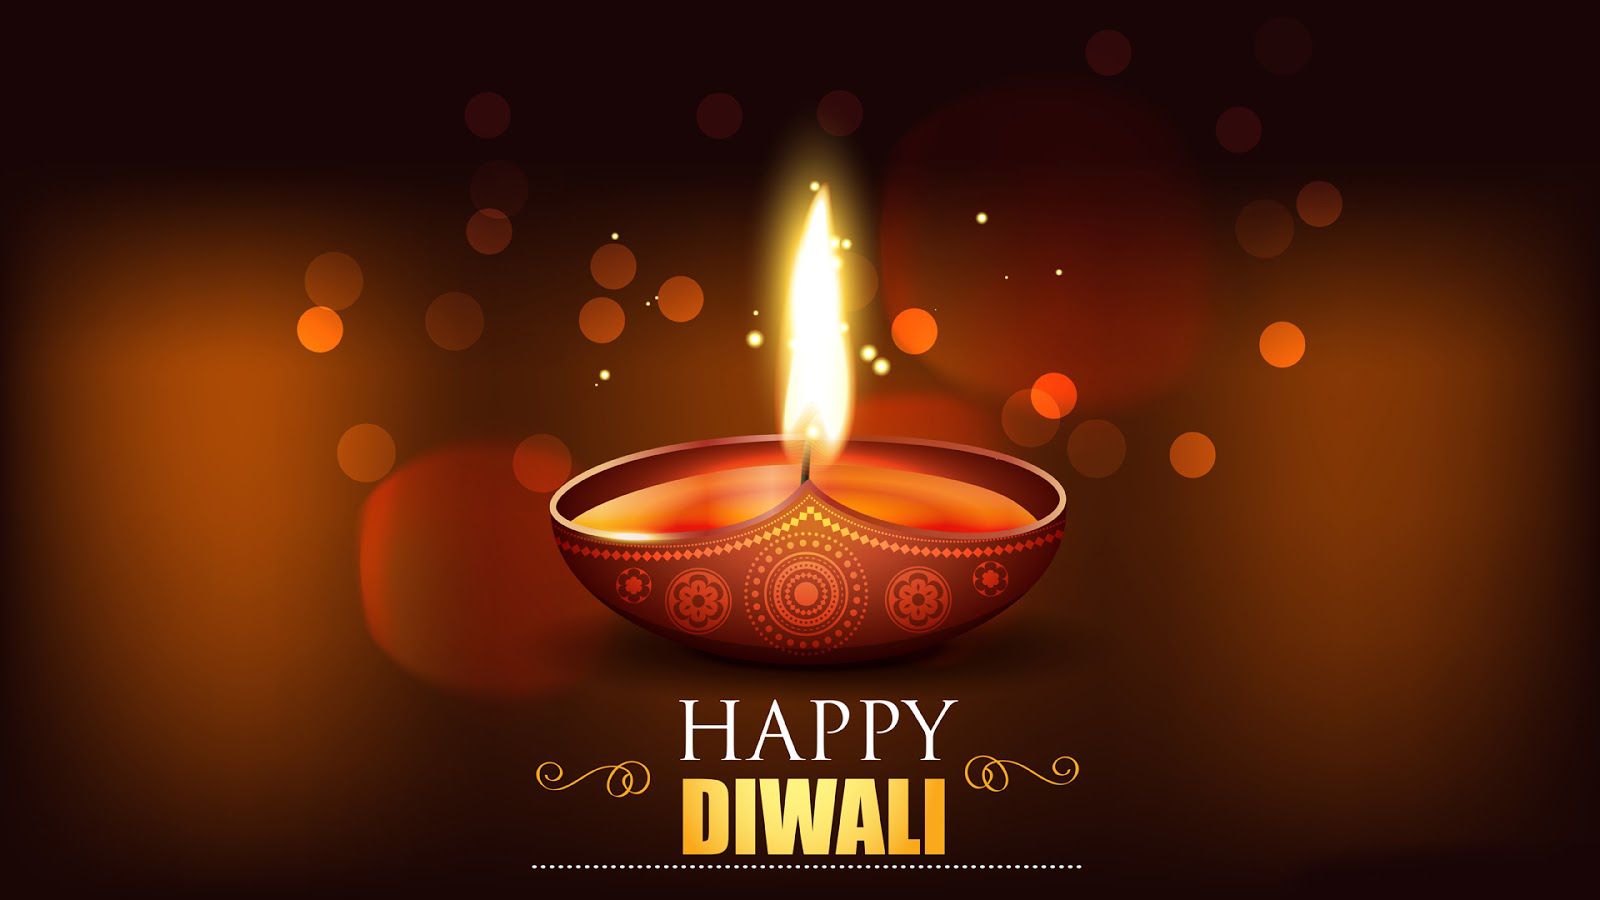 Indian Bureaucracy wishes you a Happy Diwali | Indian Bureaucracy ...